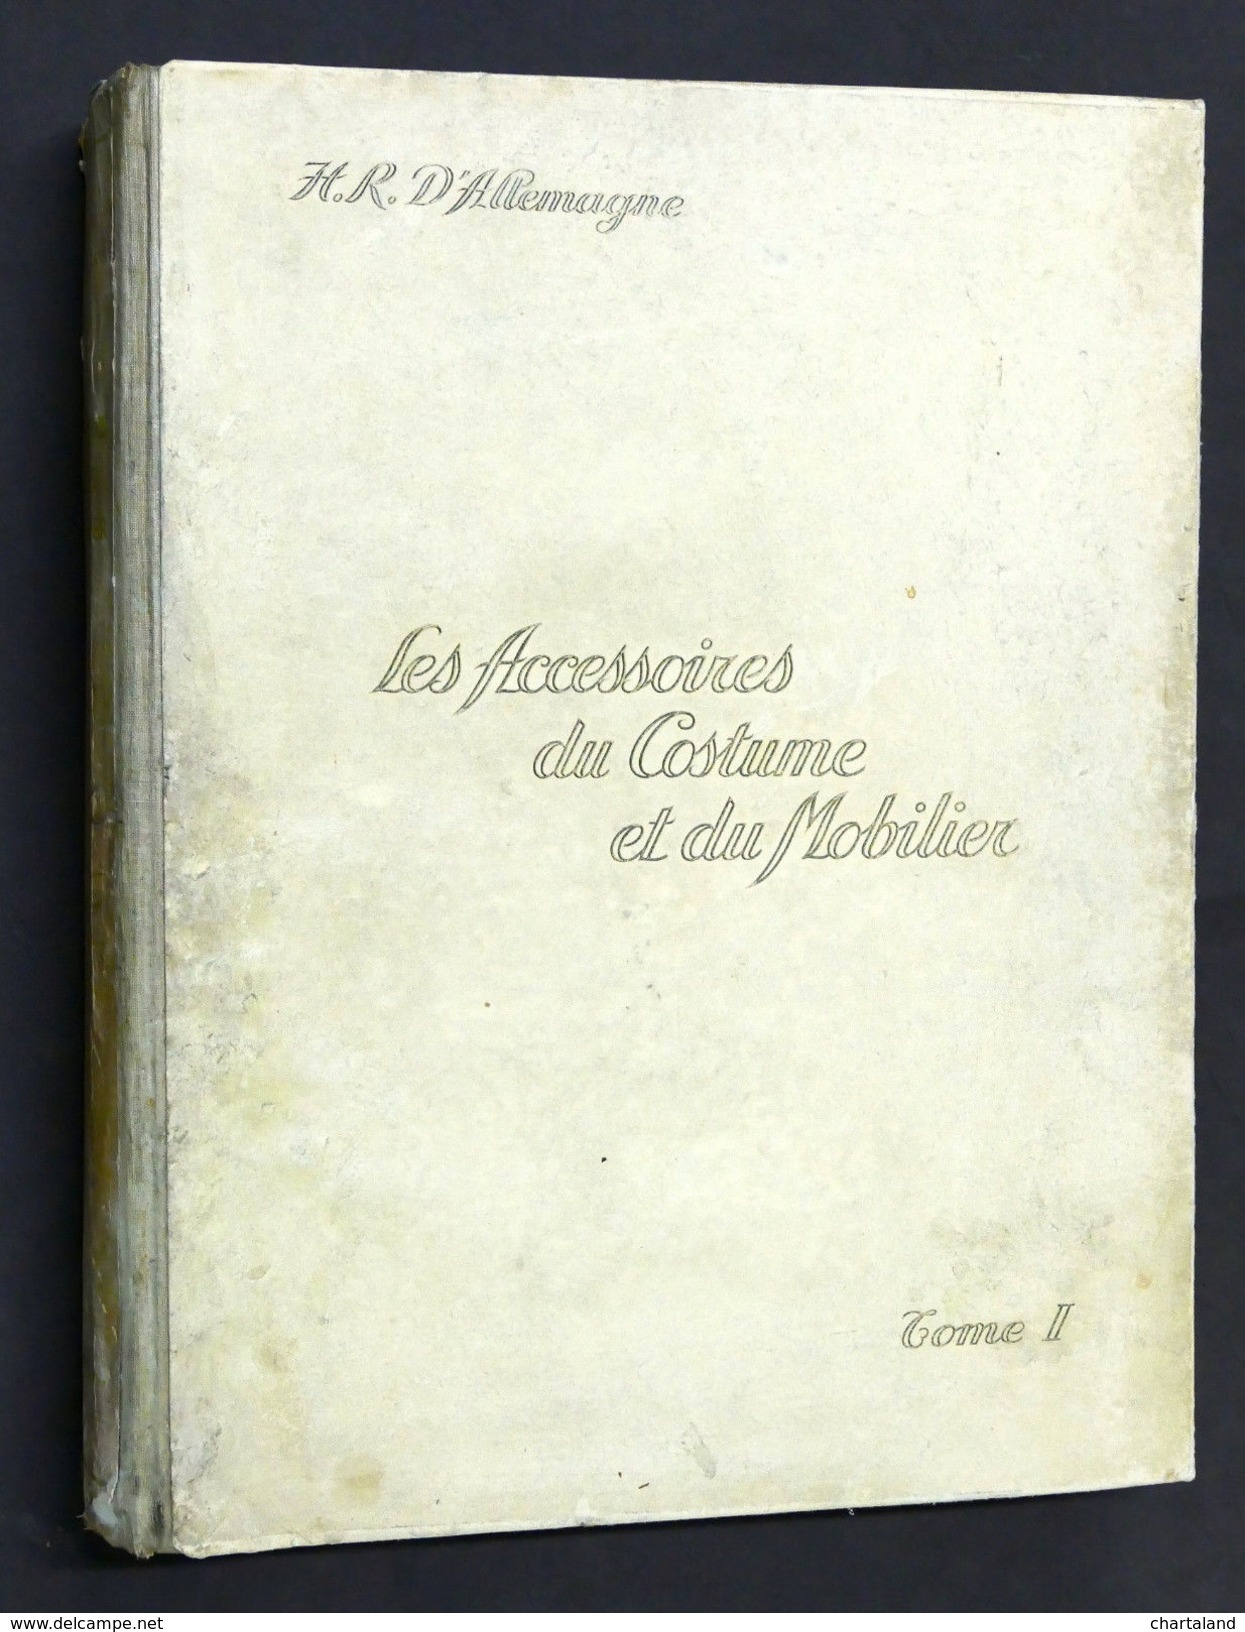 Arredamento Accessori Moda - Les accessoires du costume e du mobiler 1^ ed. 1928